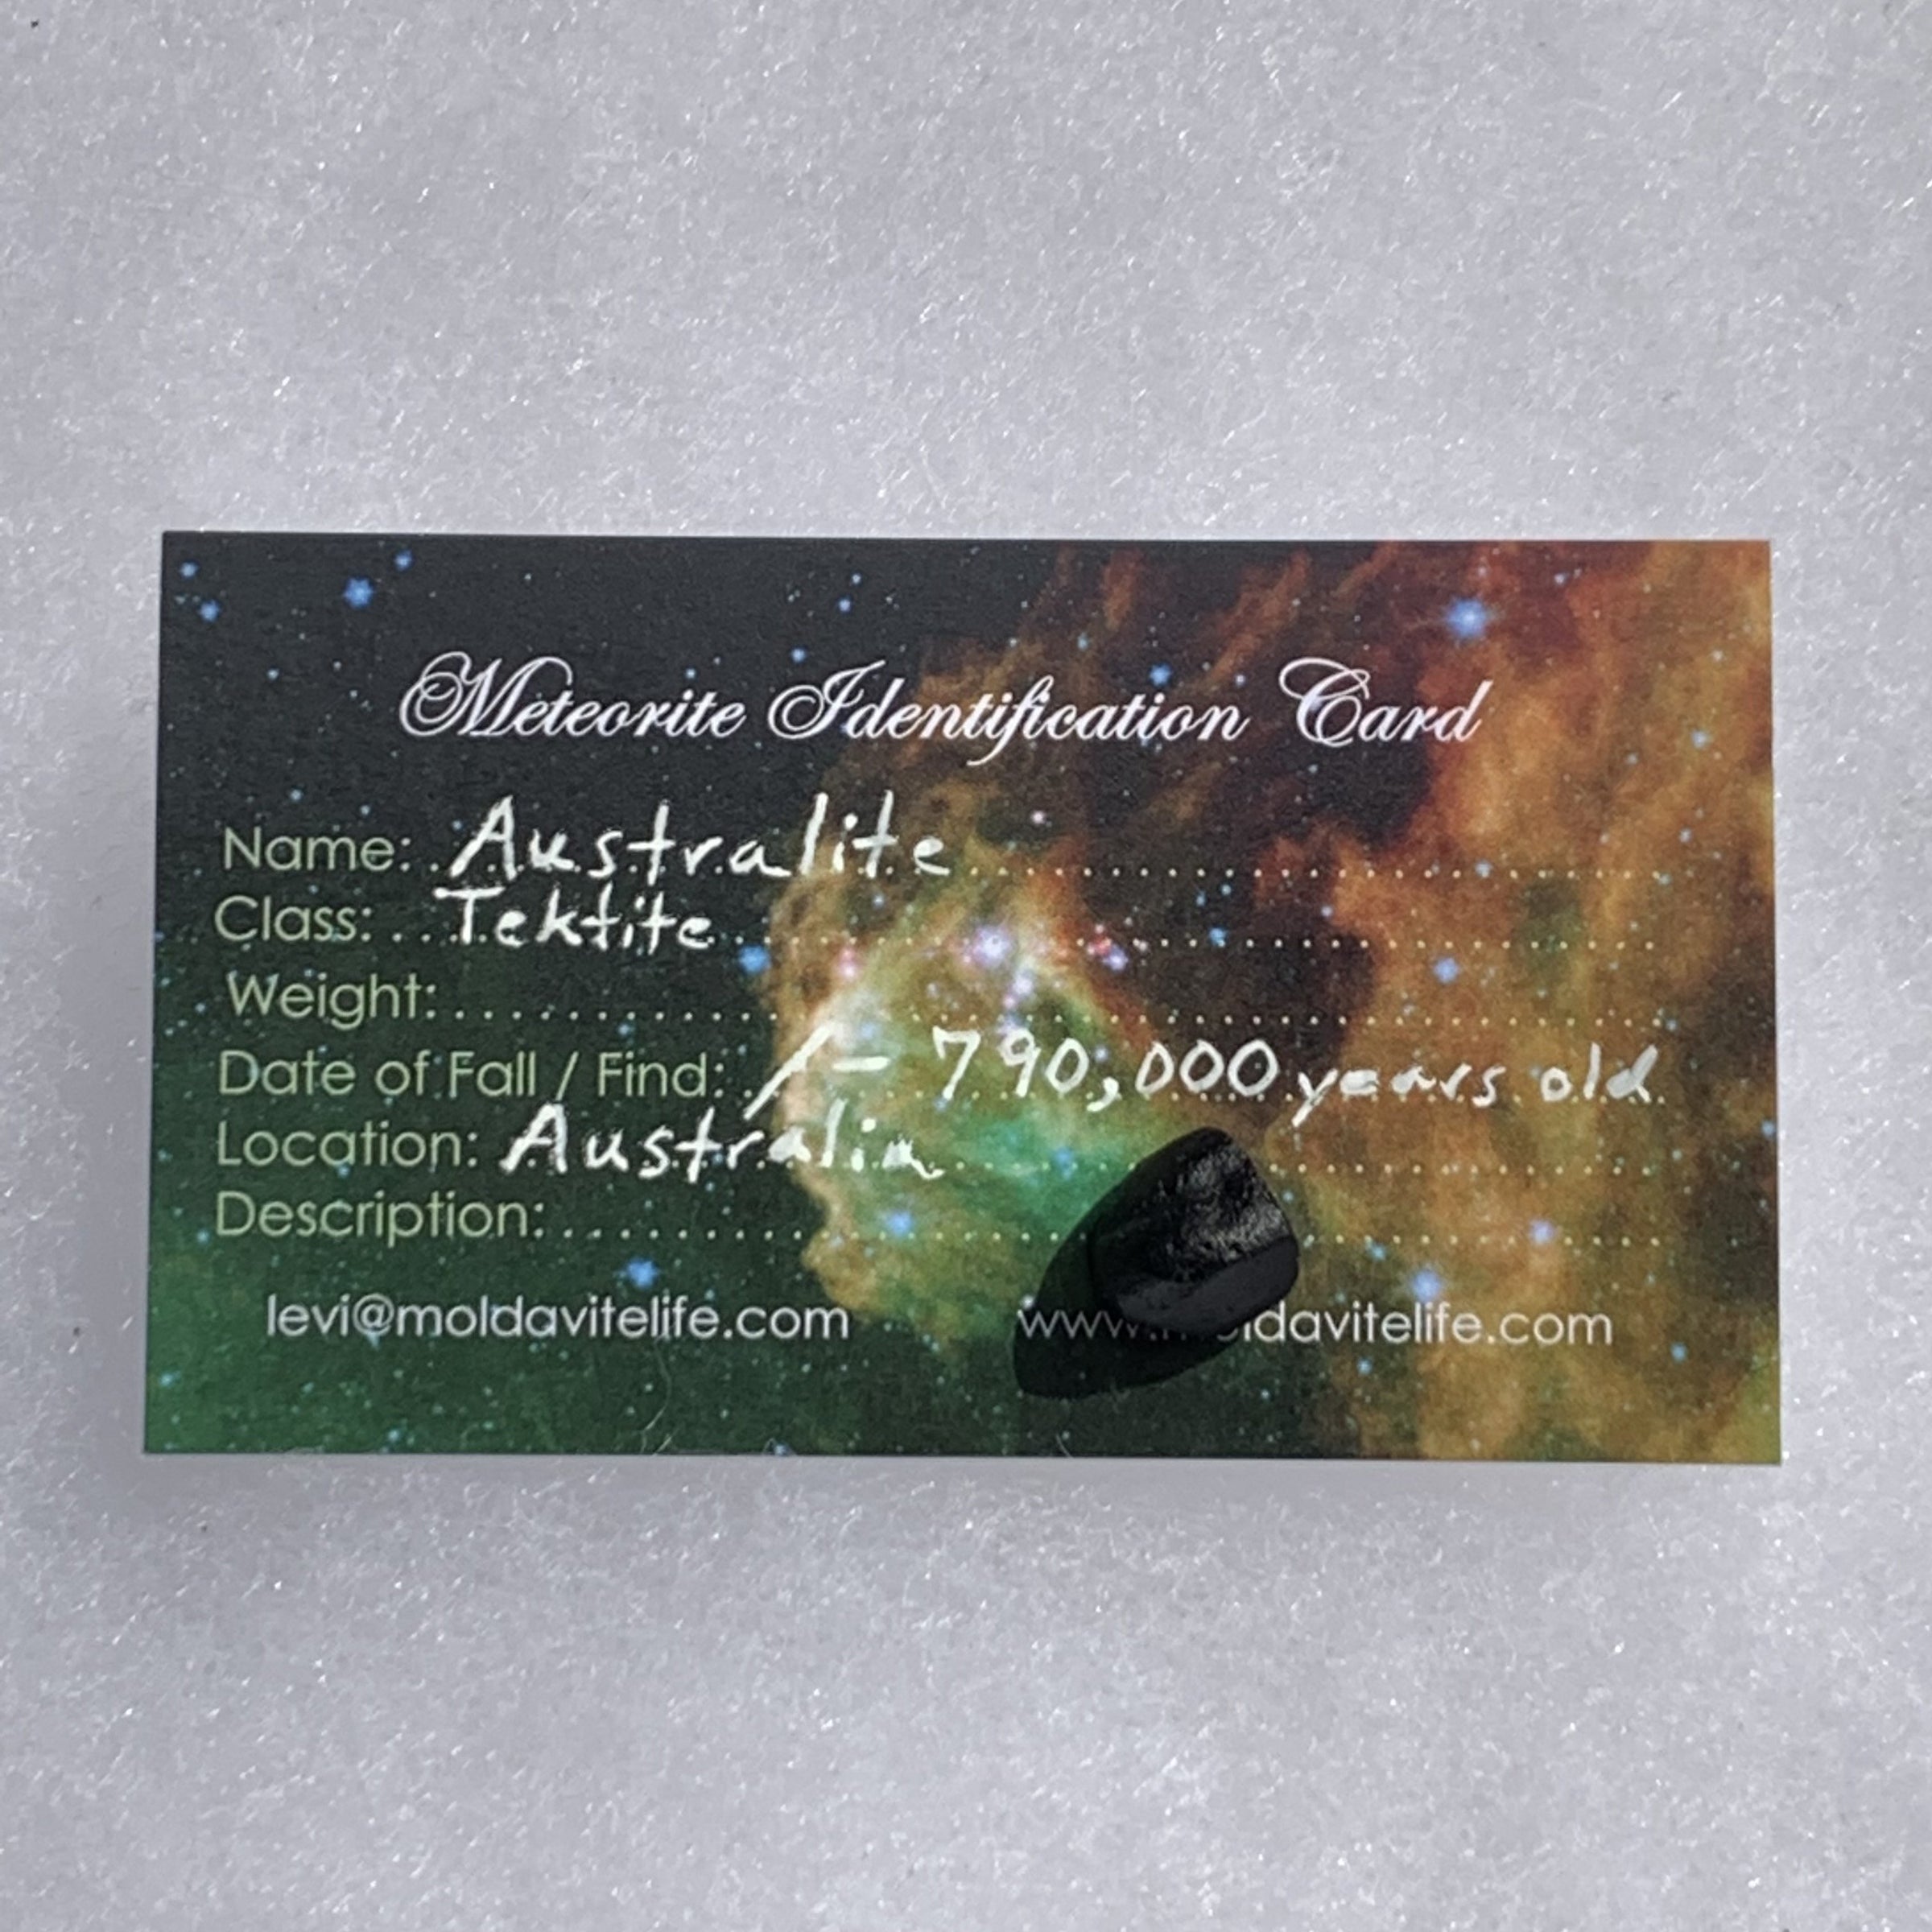 Australite Tektite 1.2 grams AU1-Moldavite Life